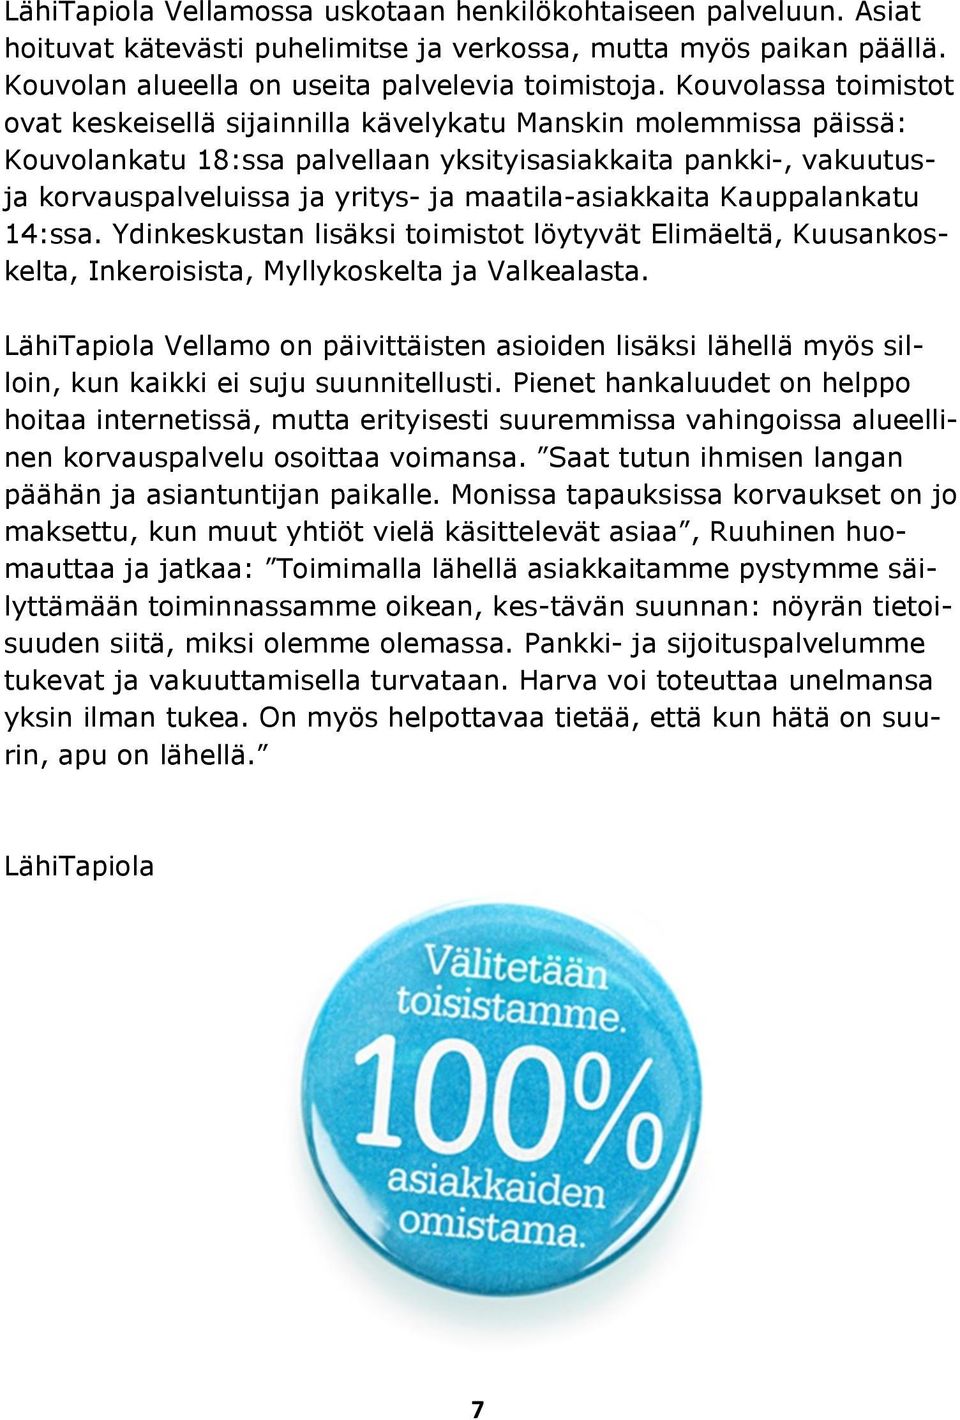 maatila-asiakkaita Kauppalankatu 14:ssa. Ydinkeskustan lisäksi toimistot löytyvät Elimäeltä, Kuusankoskelta, Inkeroisista, Myllykoskelta ja Valkealasta.